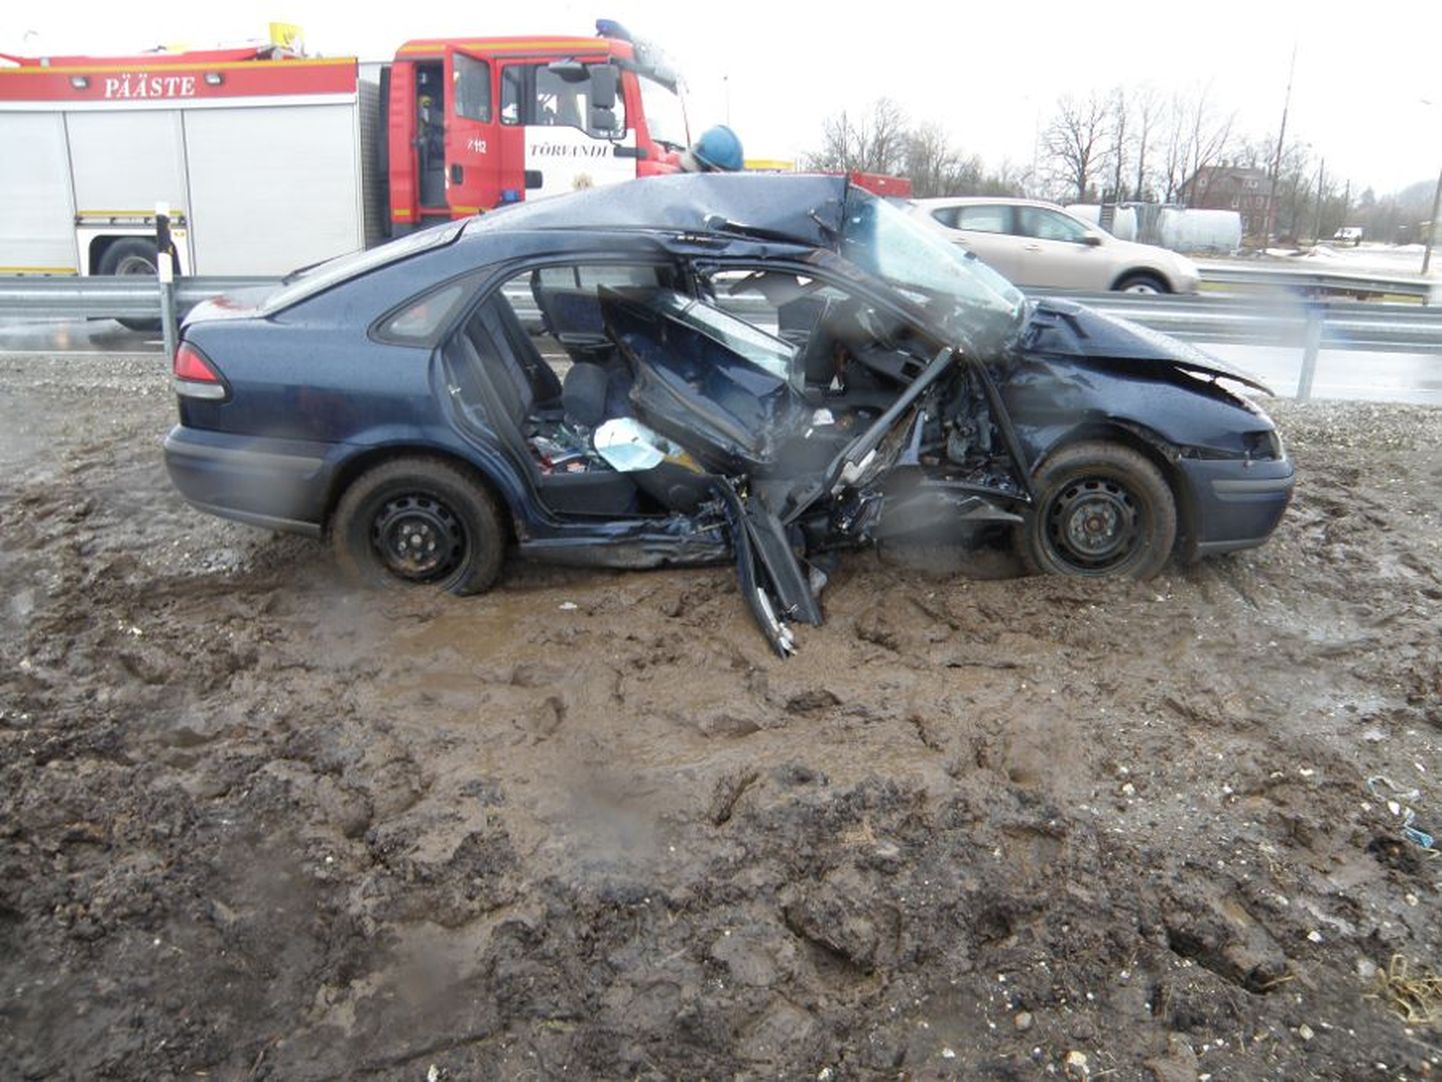 Tartumaal Nõo vallas 19. märtsil veoki ja sõiduautoga juhtunud liiklusõnnetus.